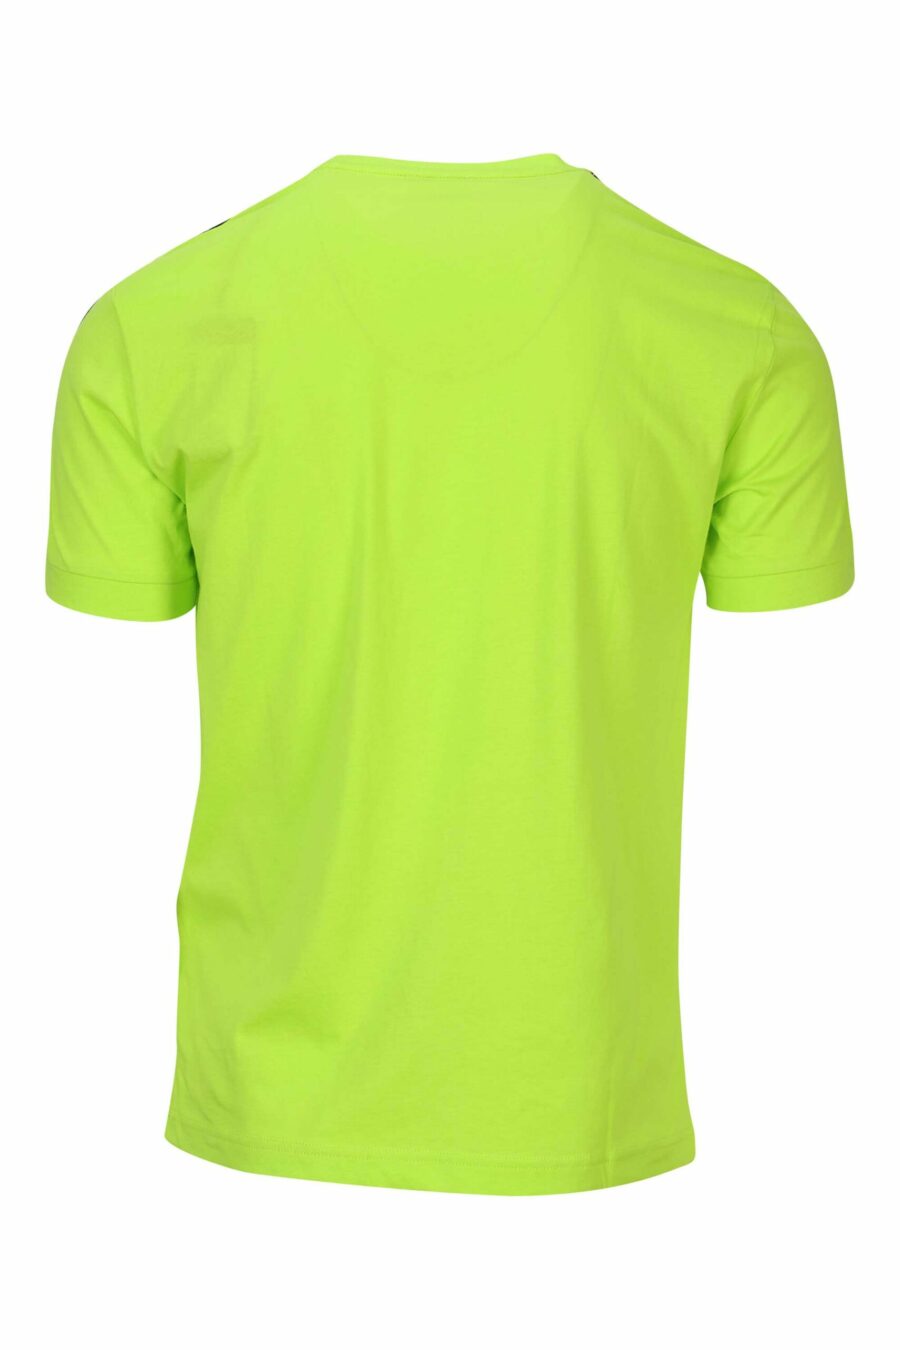 T-shirt vert citron avec mini-logo noir "lux identity" - 8058947490943 à l'échelle 1